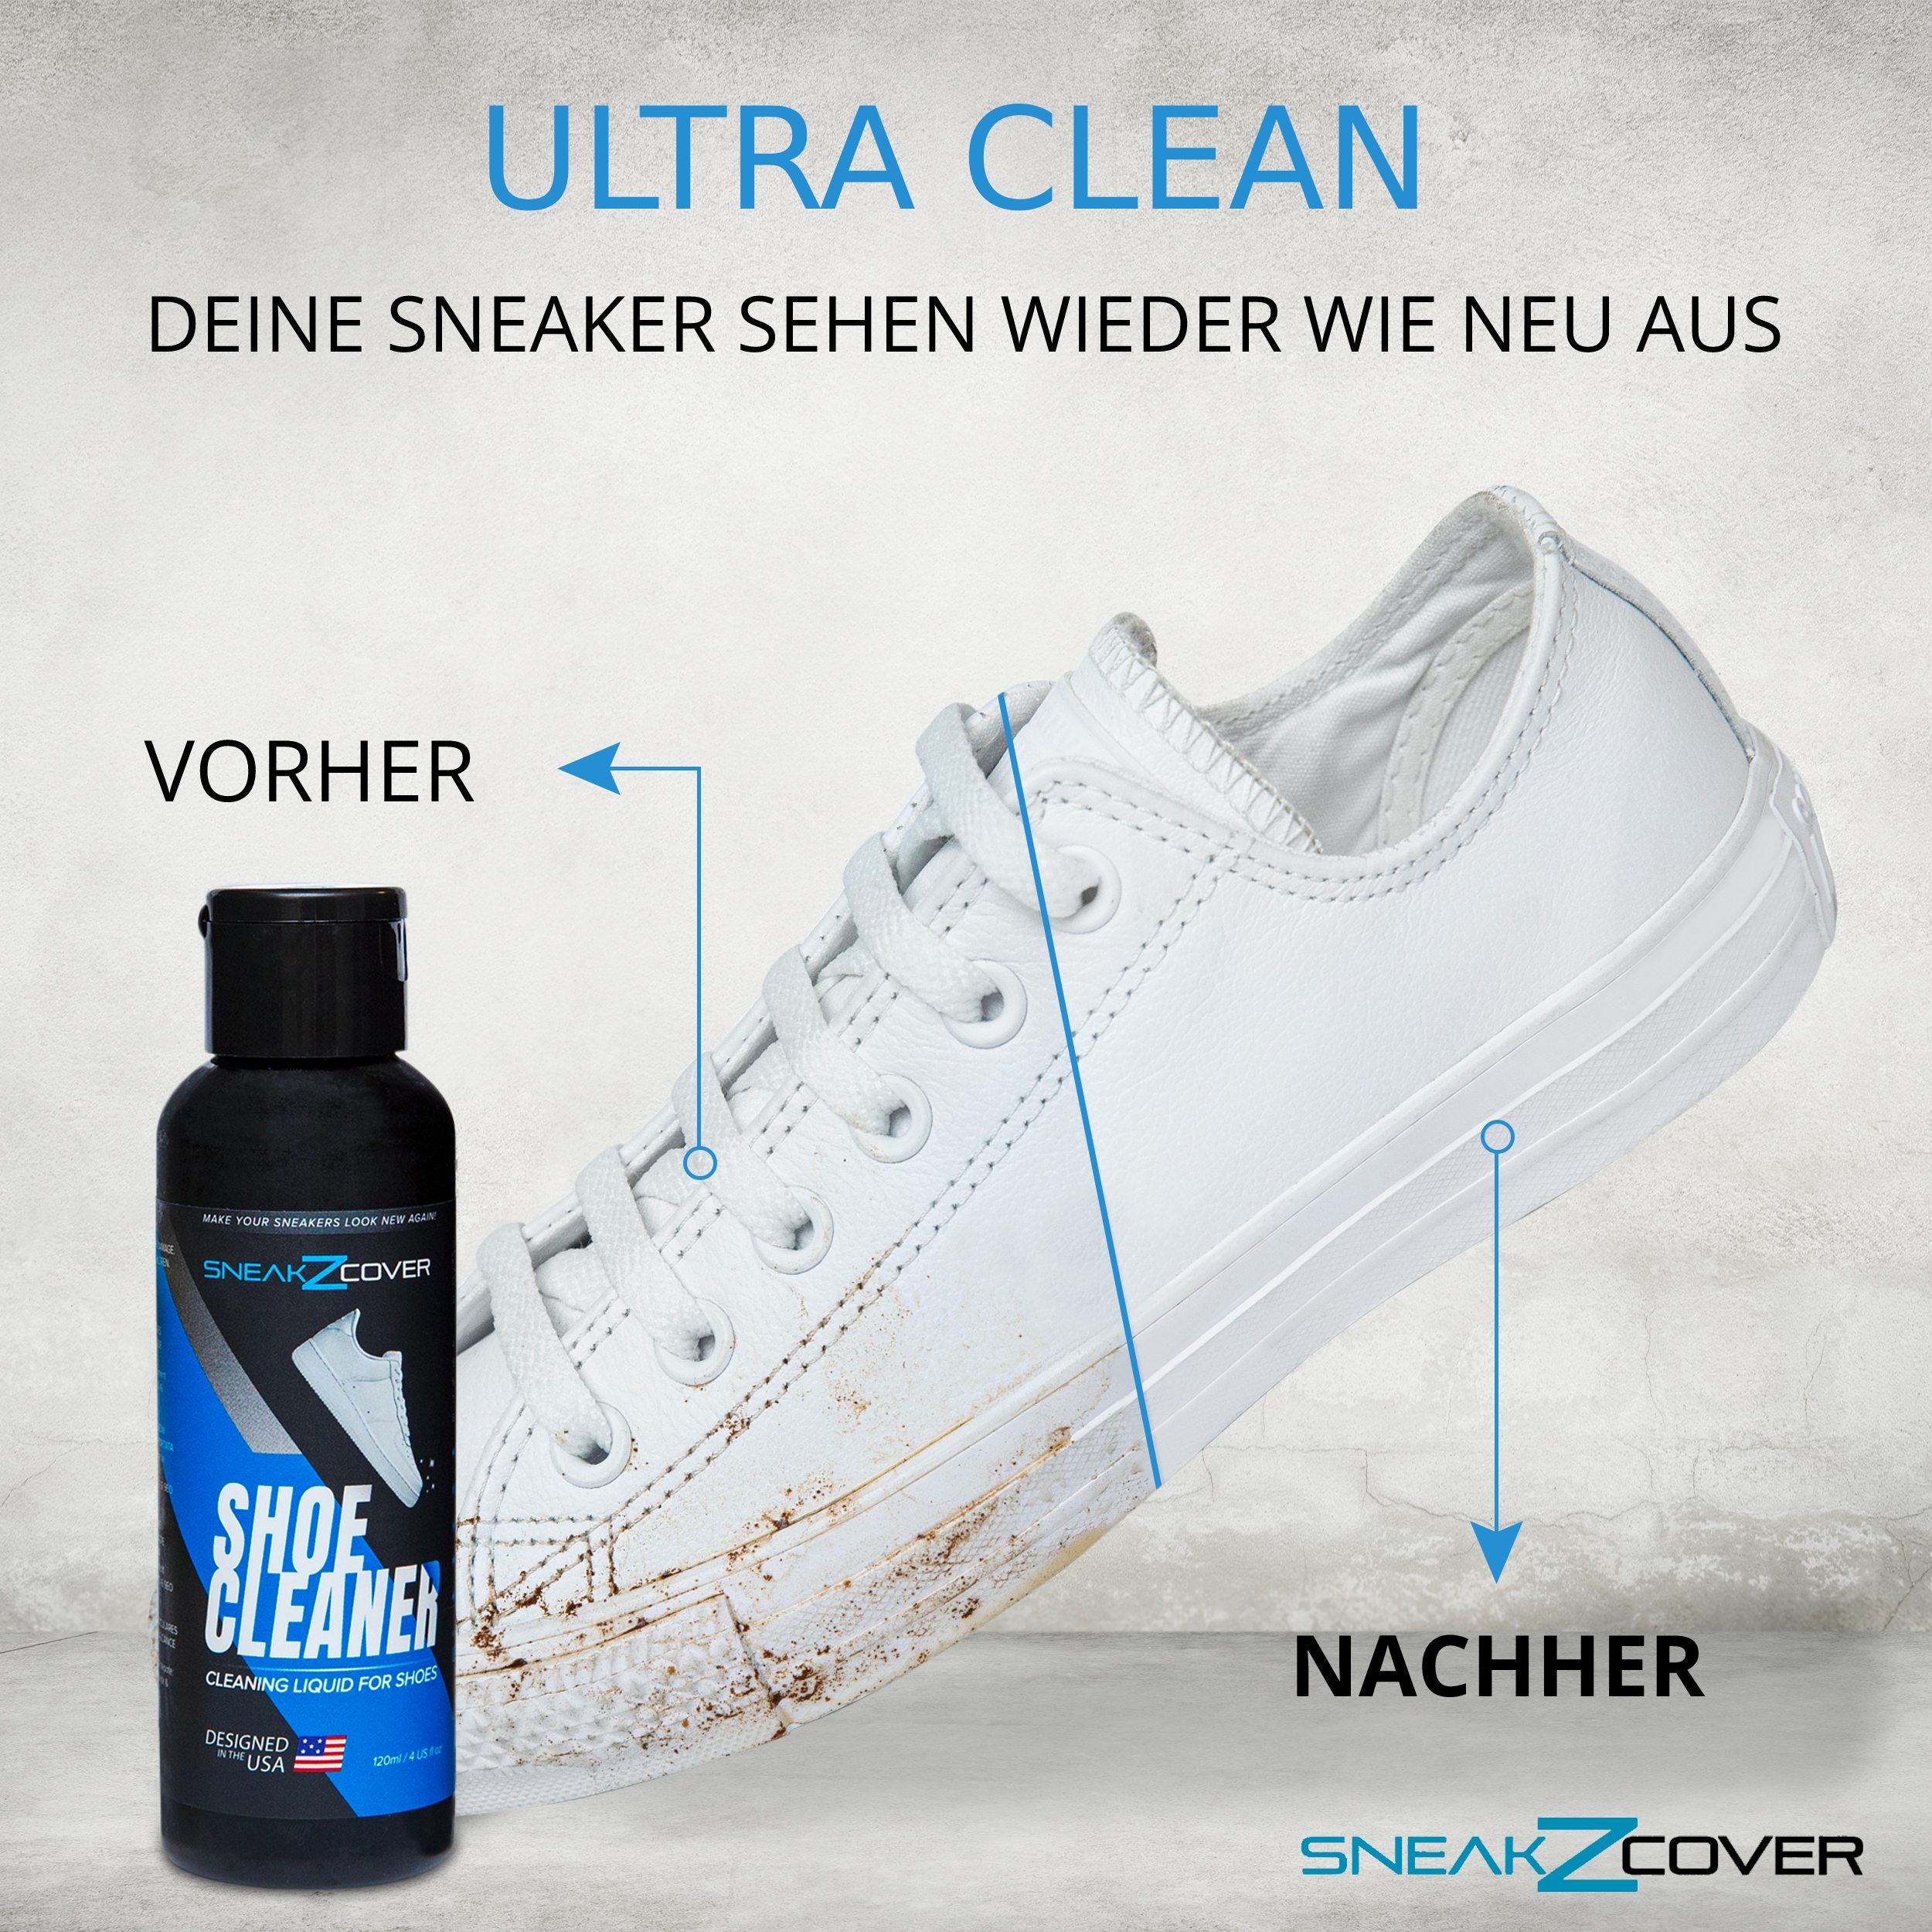 Sneaker Cleaner Kit